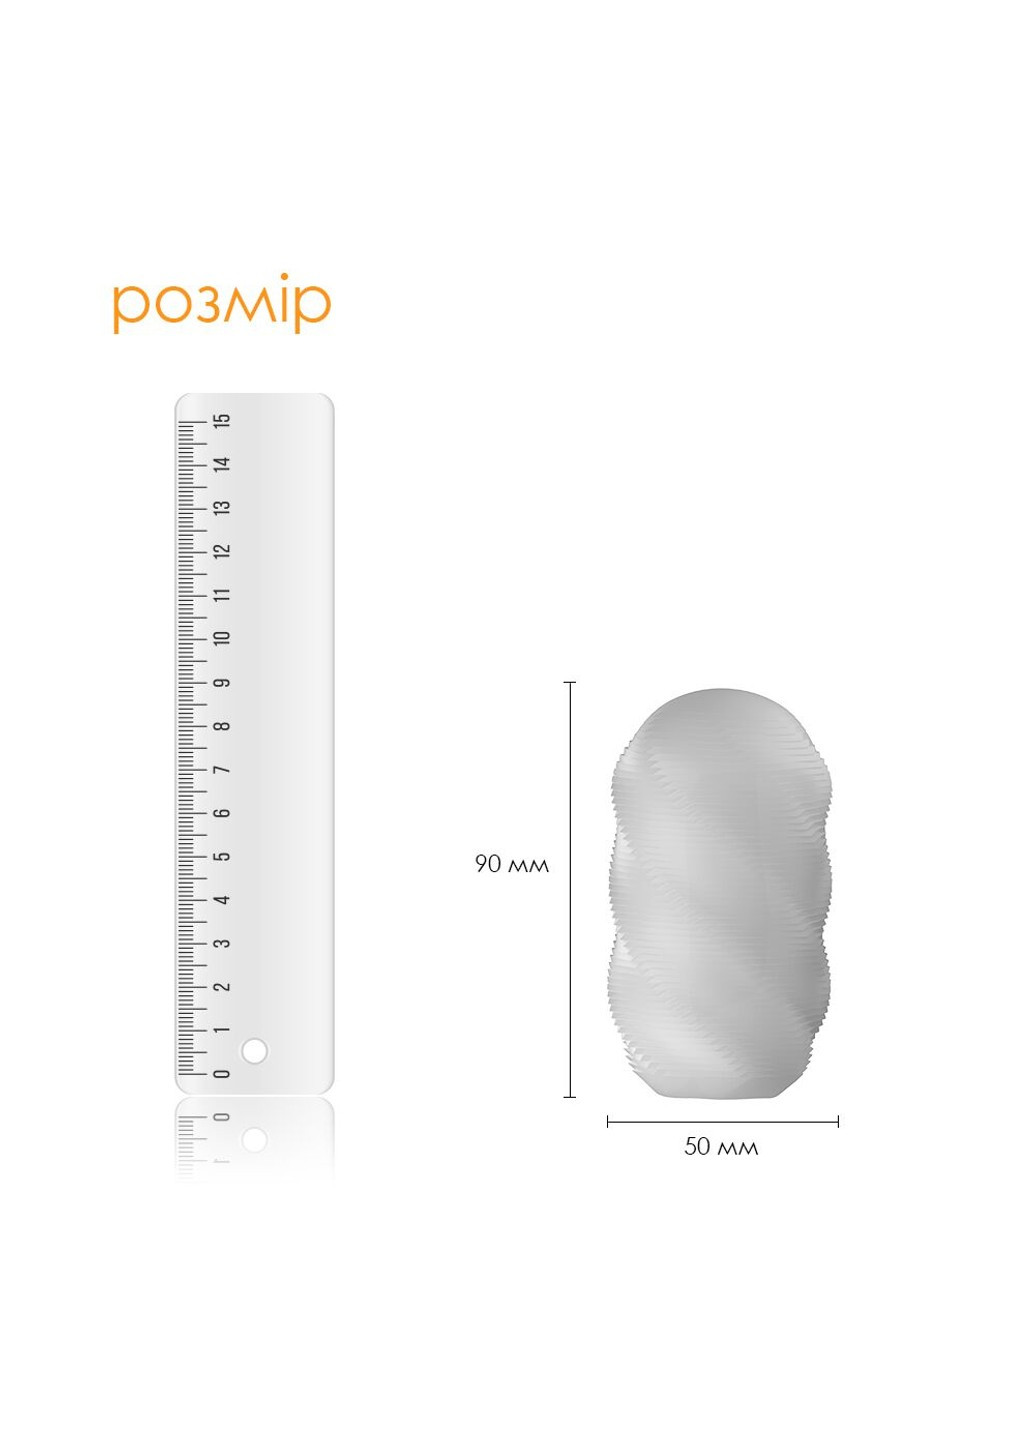 Набір яєць мастурбаторів Hedy X-Mixed Textures Svakom (252607228)